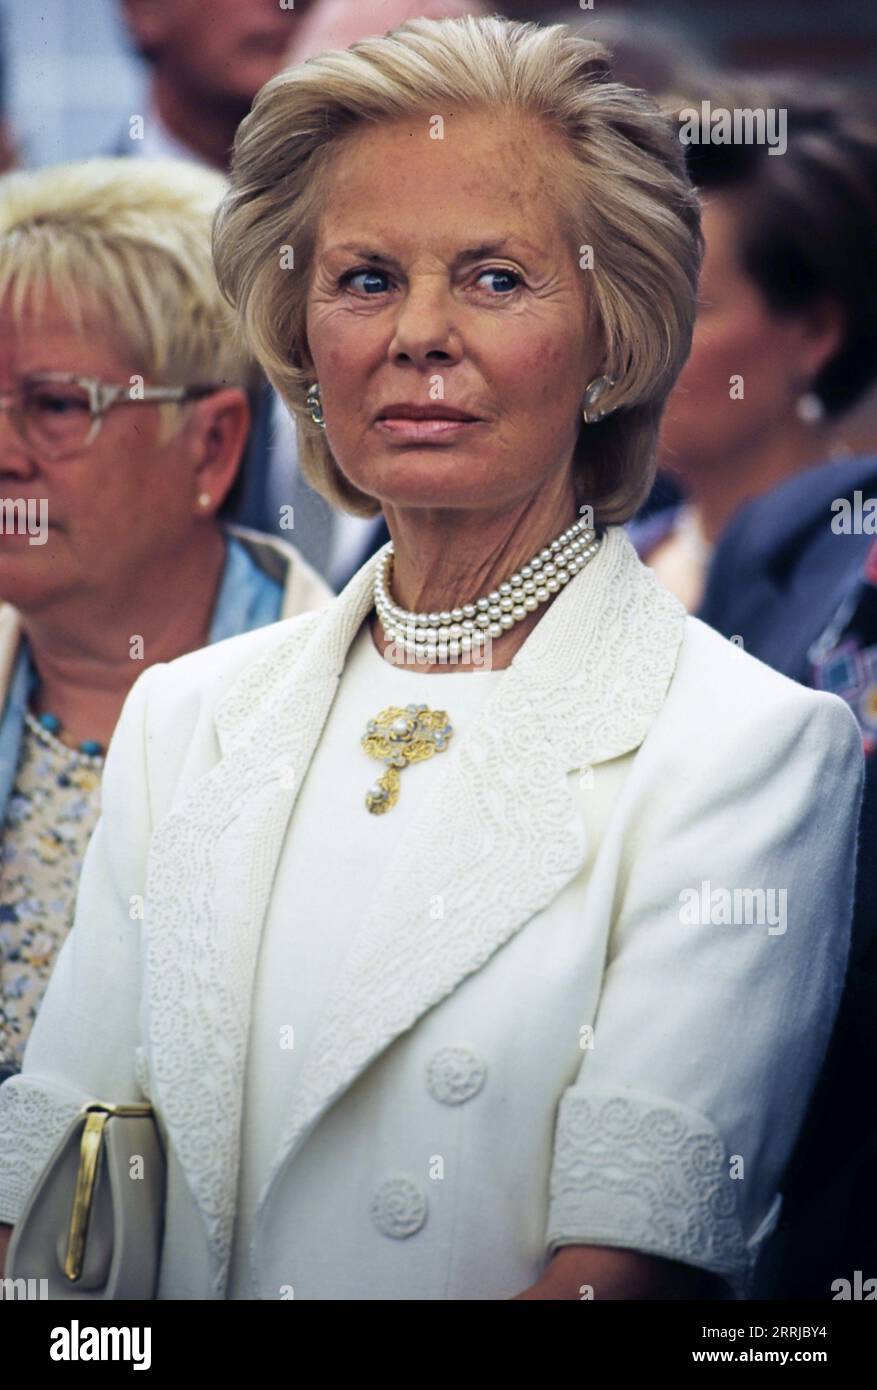 Katharine Herzogin von Kent aka Katharine Duchess of Kent, Mitglied des britischen Königshauses, Ehefrau von Edward Herzog von Kent, überreicht die Siegerpokale beim Damen-Finale in Wimbledon, Portrait circa 1993. Stock Photo